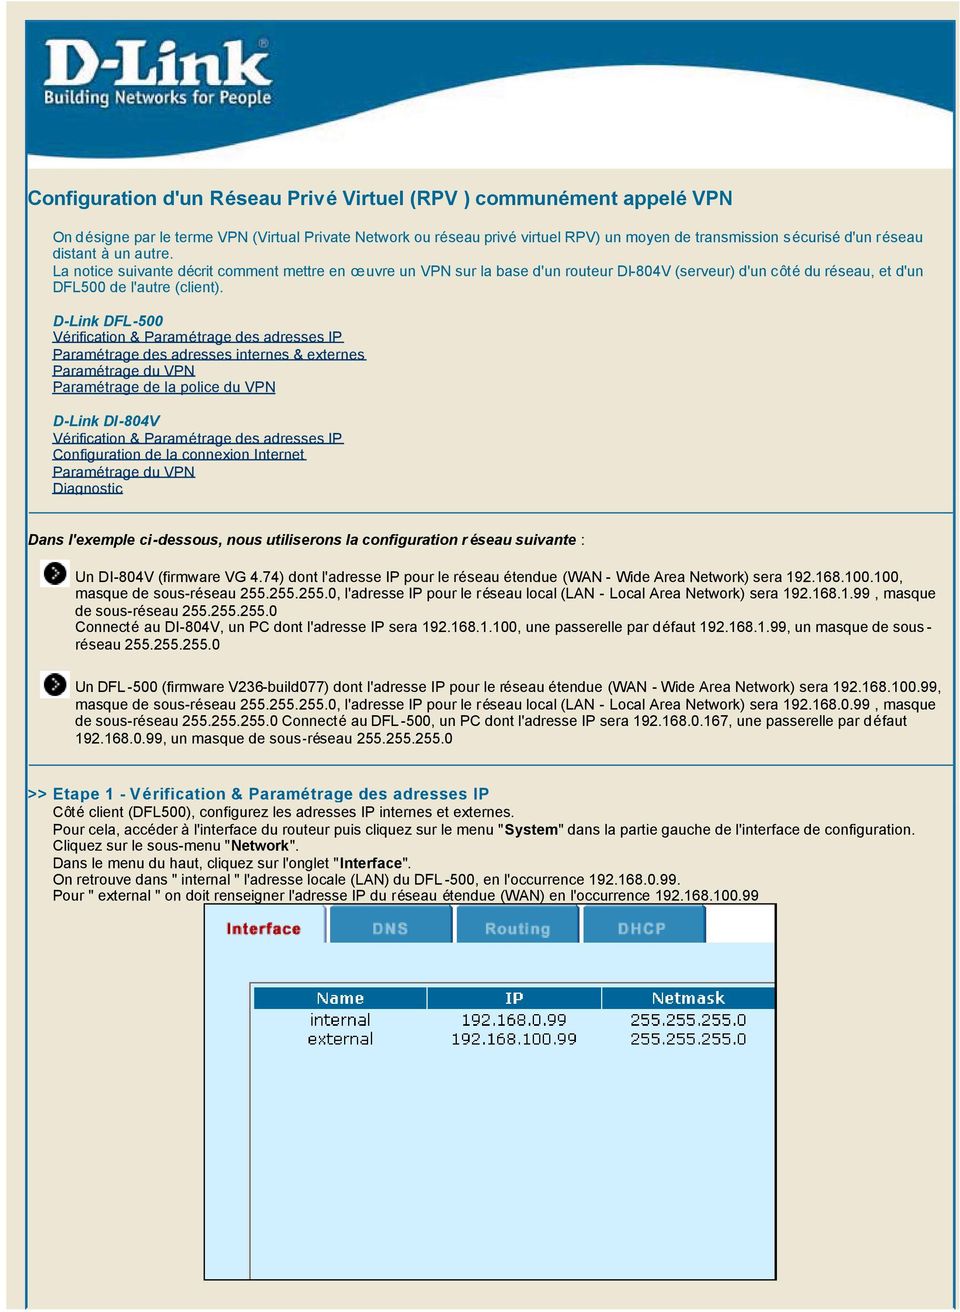 D-Link DFL-500 Vérification & Paramétrage des adresses IP Paramétrage des adresses internes & externes Paramétrage du VPN Paramétrage de la police du VPN D-Link DI-804V Vérification & Paramétrage des